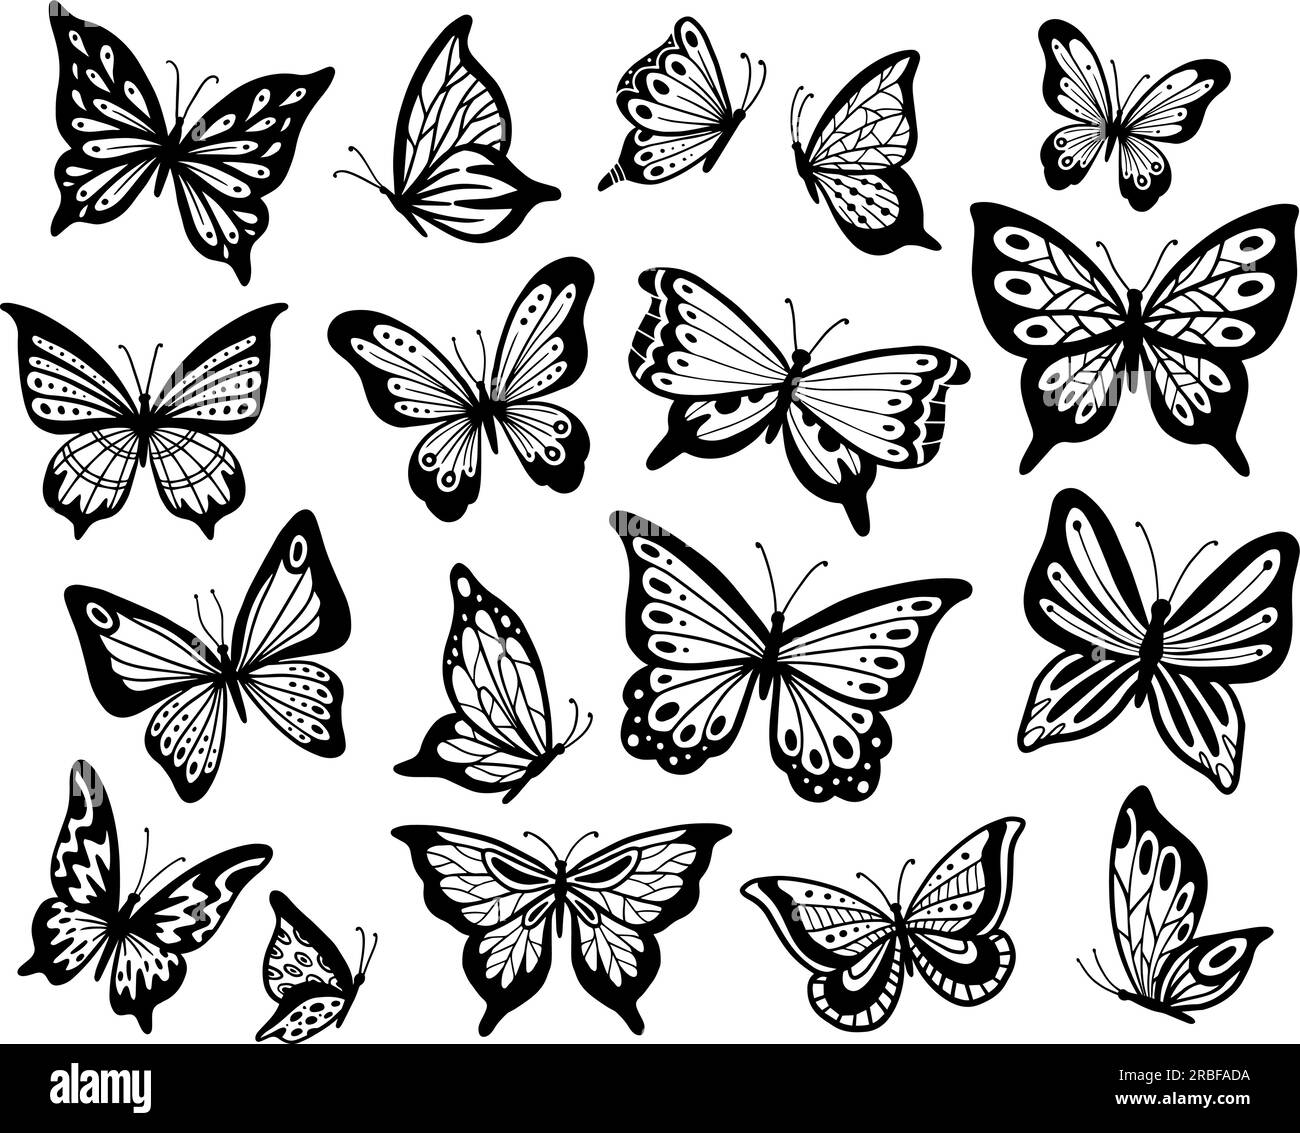 Dibujando mariposas Imágenes de stock en blanco y negro - Alamy